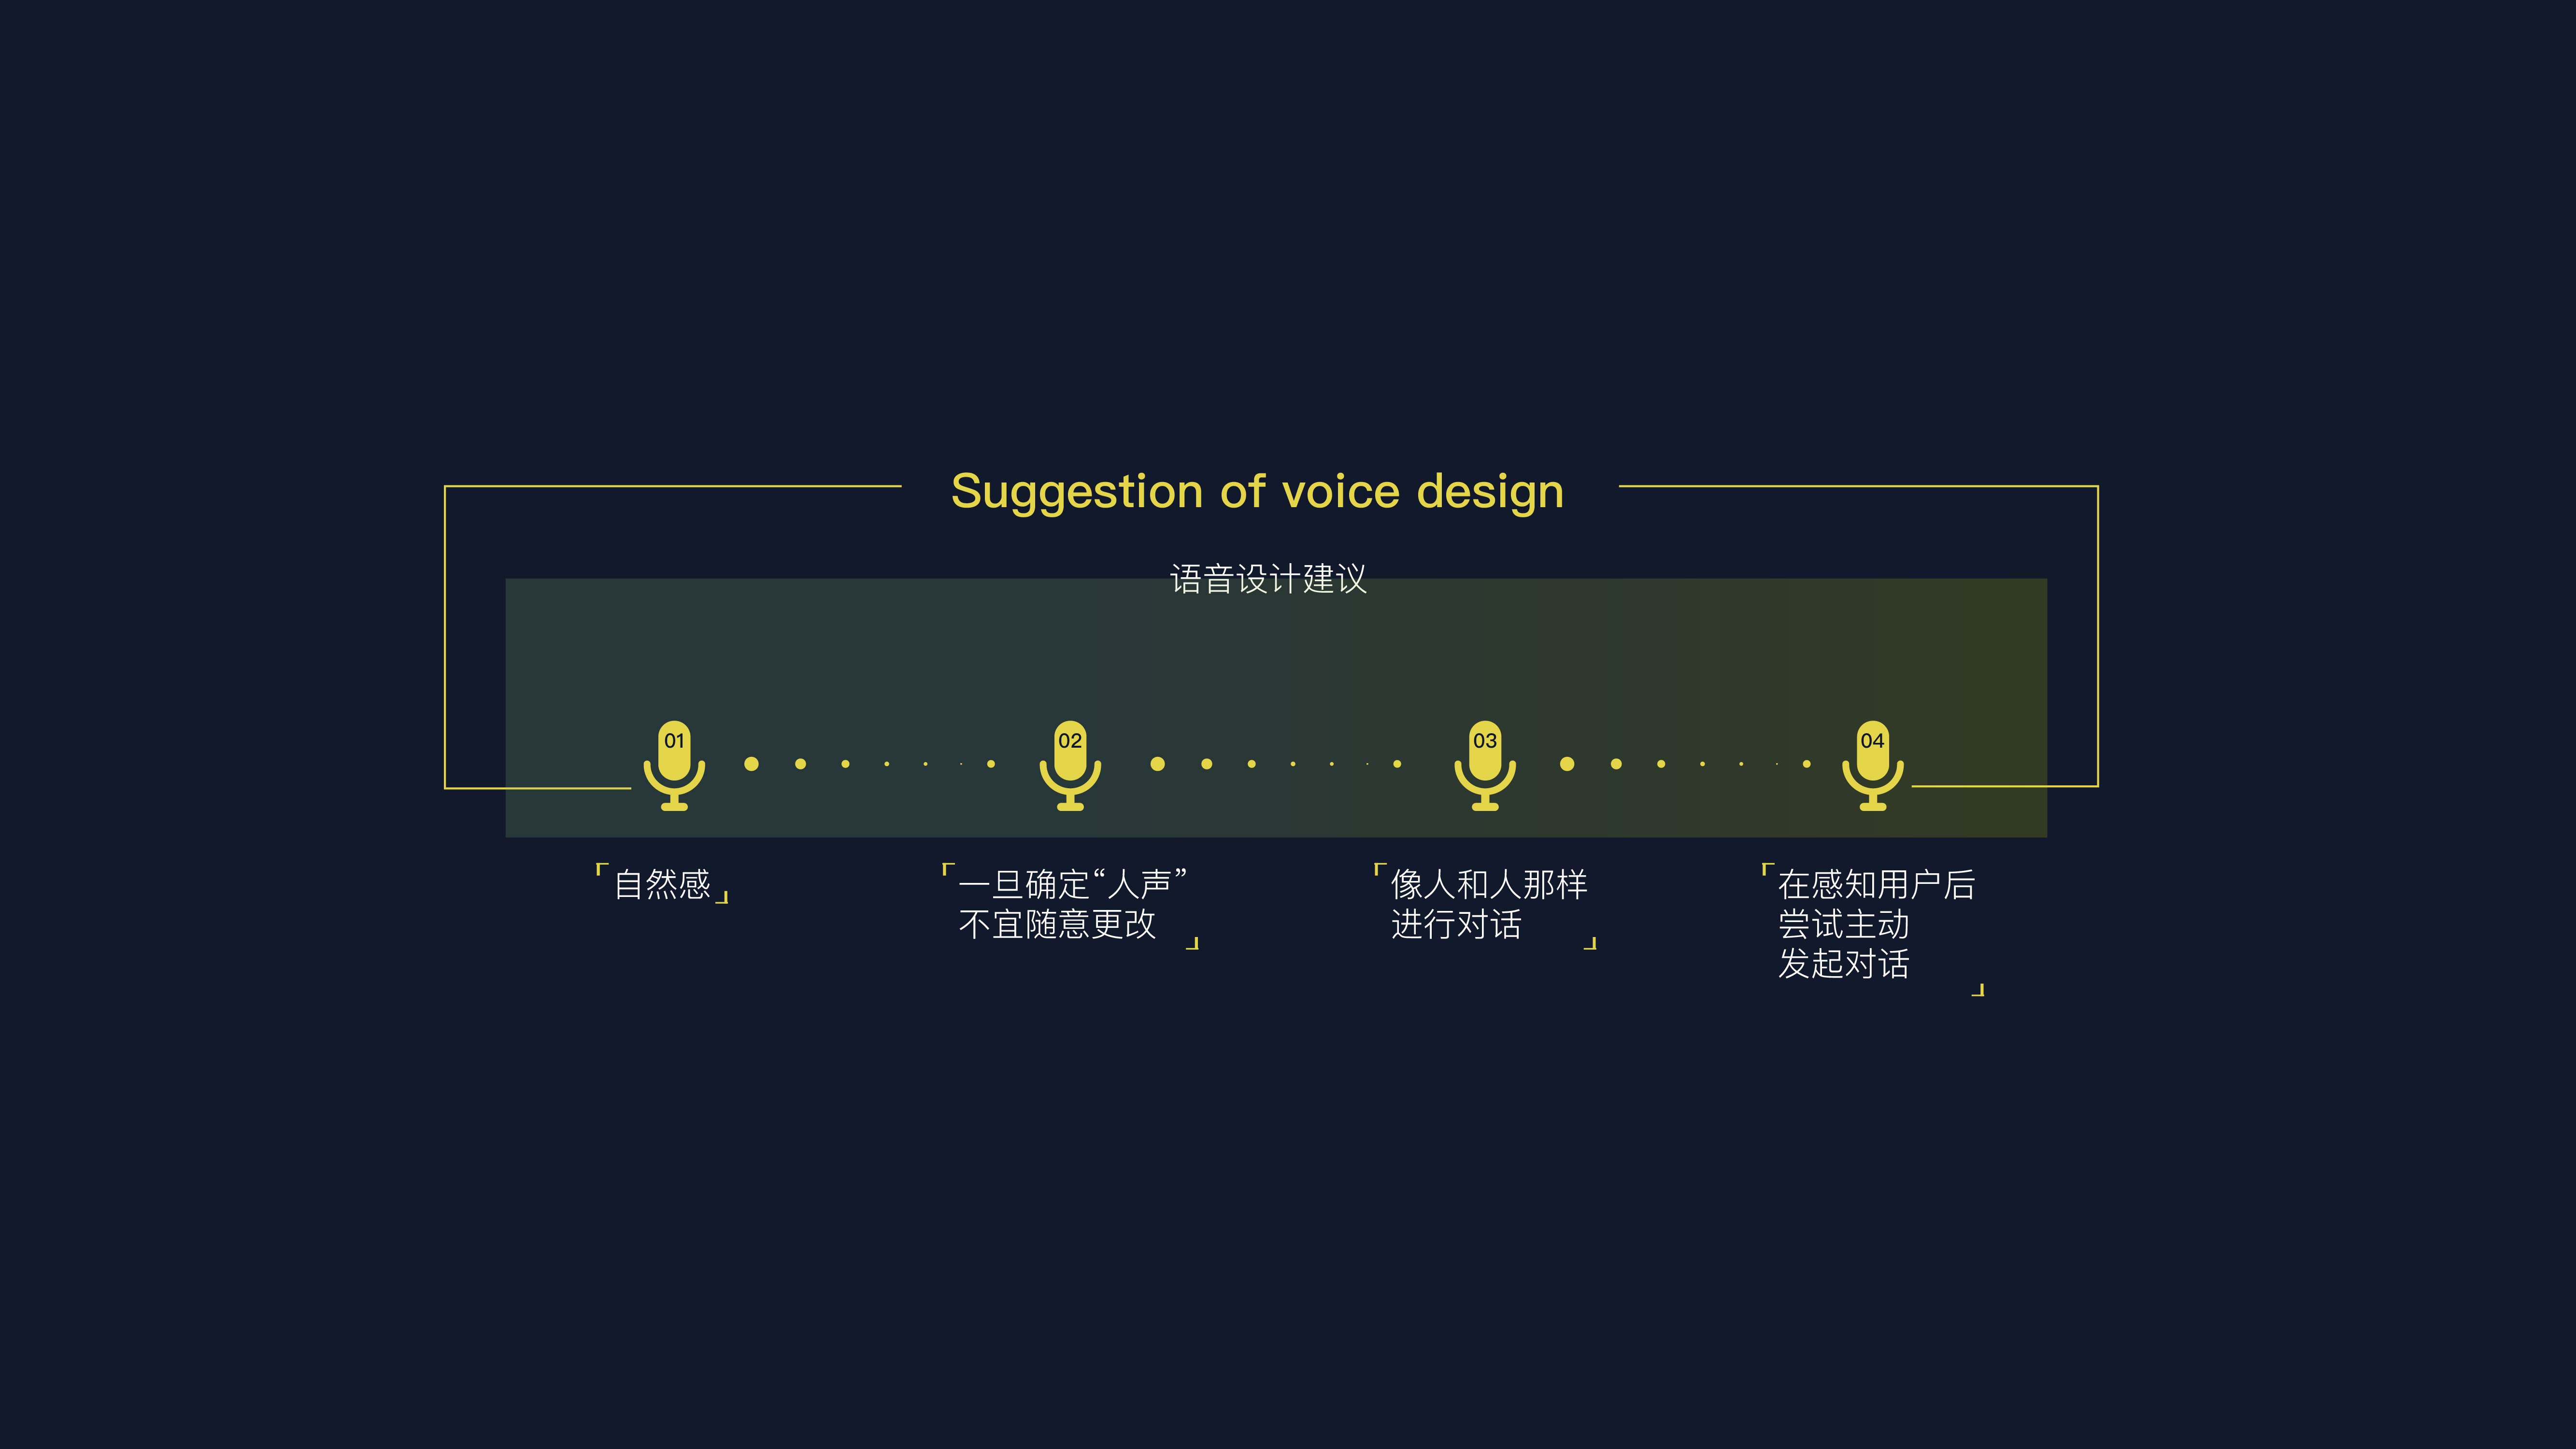 以语音交互为核心功能的智能产品设计建议